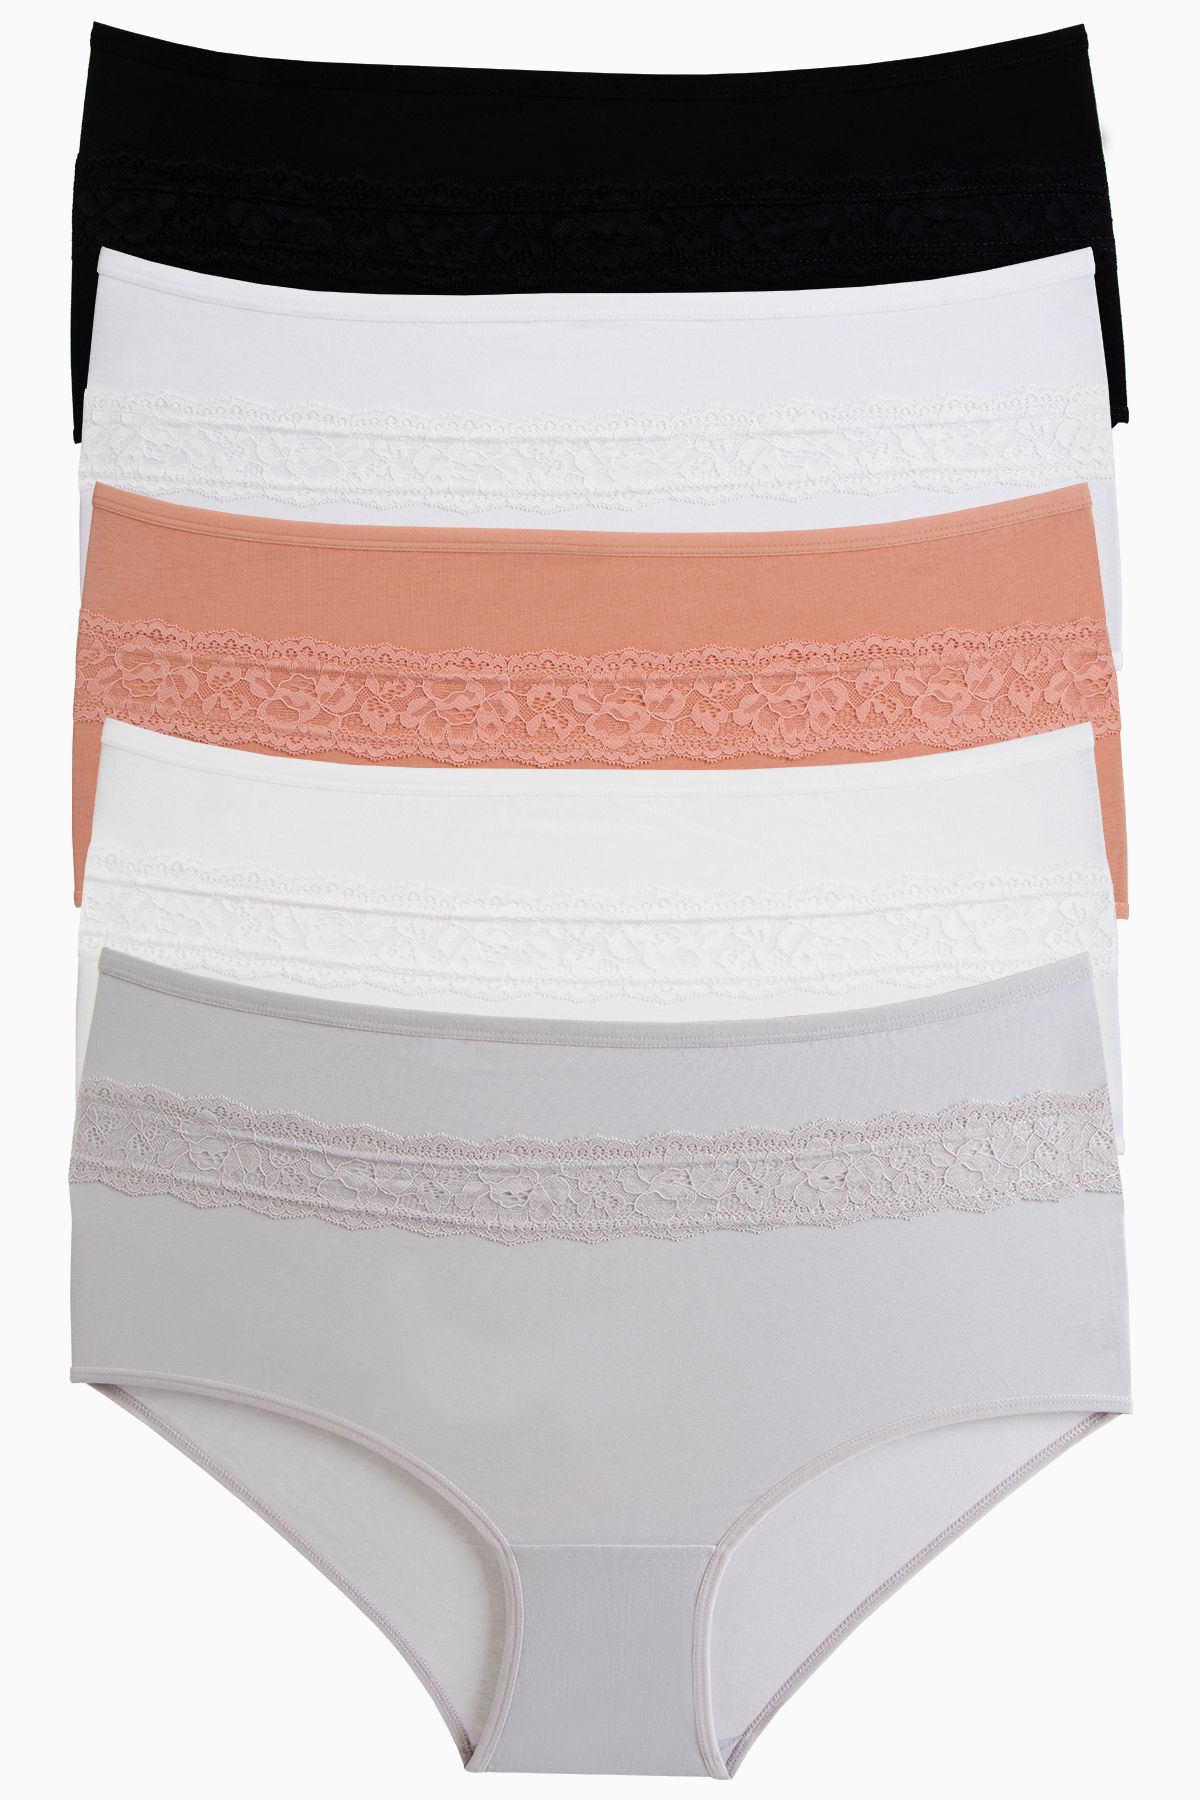 TAMPAP Women's Plus Size Panties Lycra 5 Pack Tampap - Trendyol